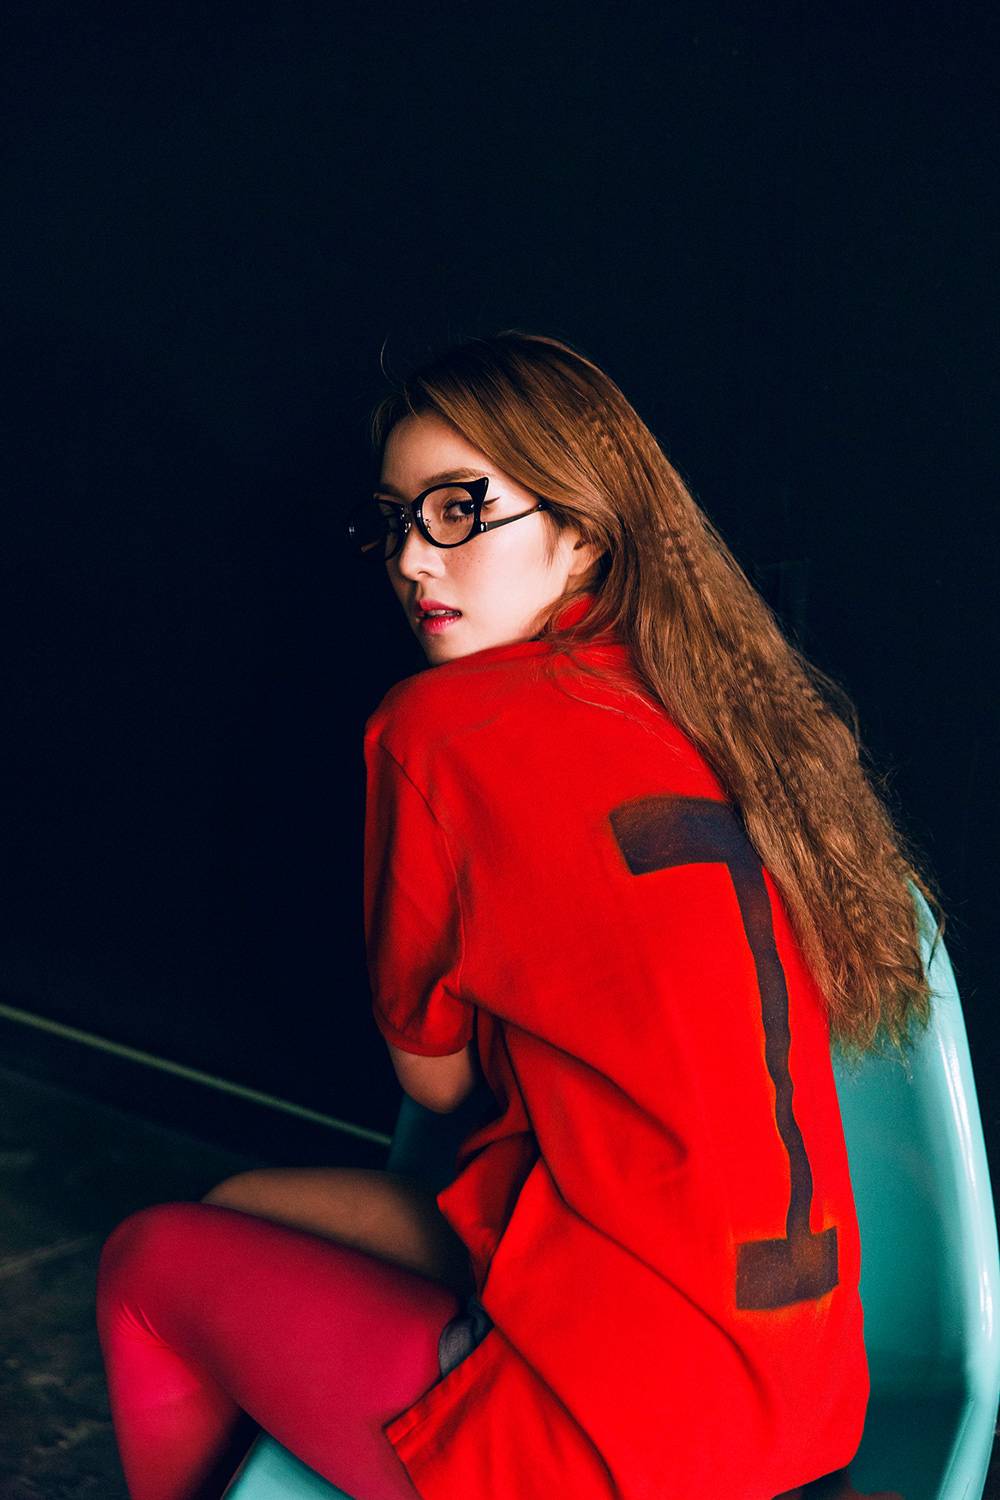 9일(수), Red Velvet 첫 정규 앨범 'The Red' 발매 예정 | 인스티즈